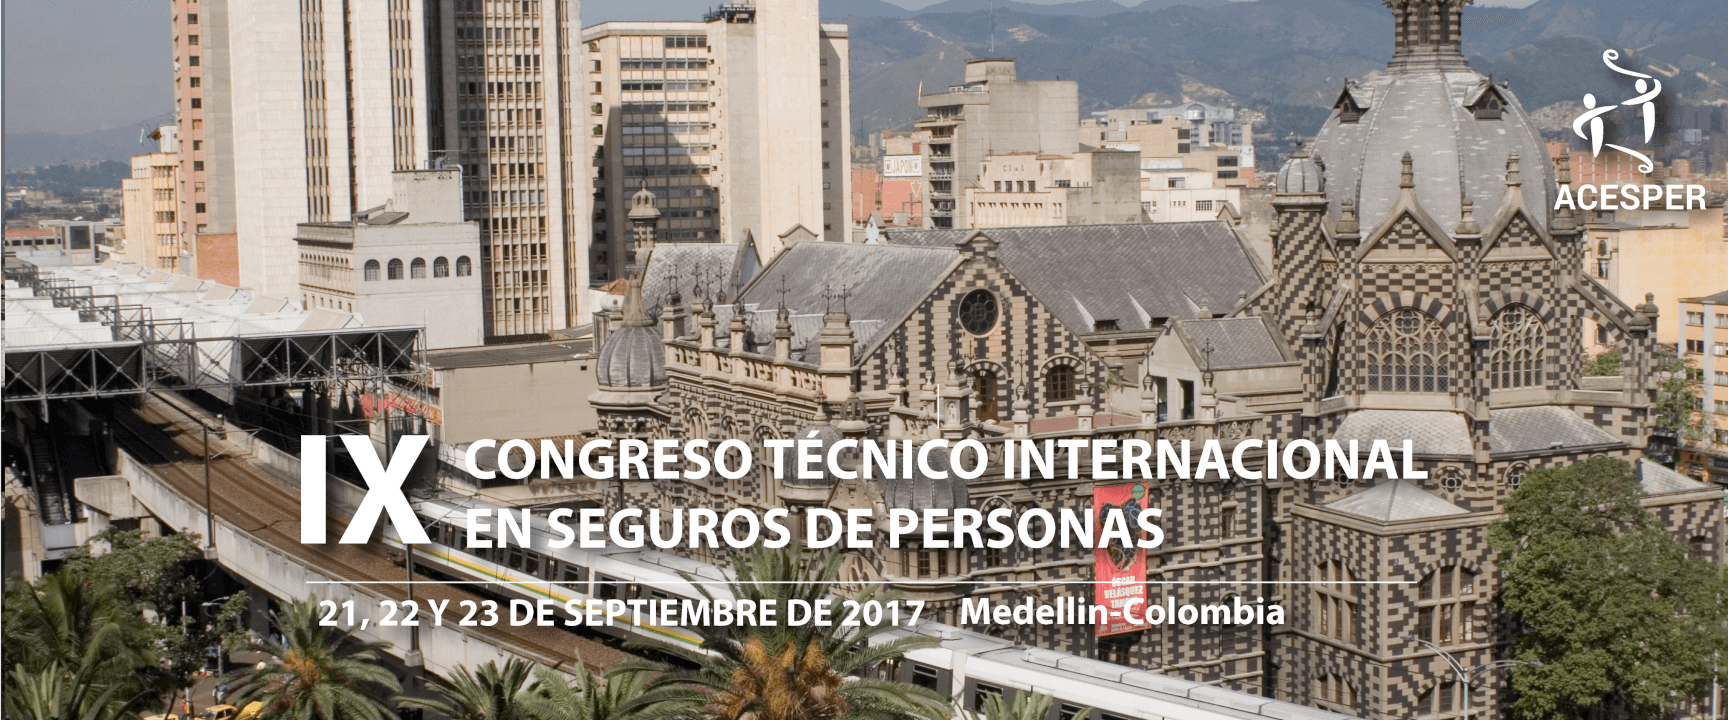 IX CONGRESO TÉCNICO INTERNACIONAL EN SEGUROS DE PERSONAS 21, 22 y 23 DE SEPTIEMBRE DE 2017